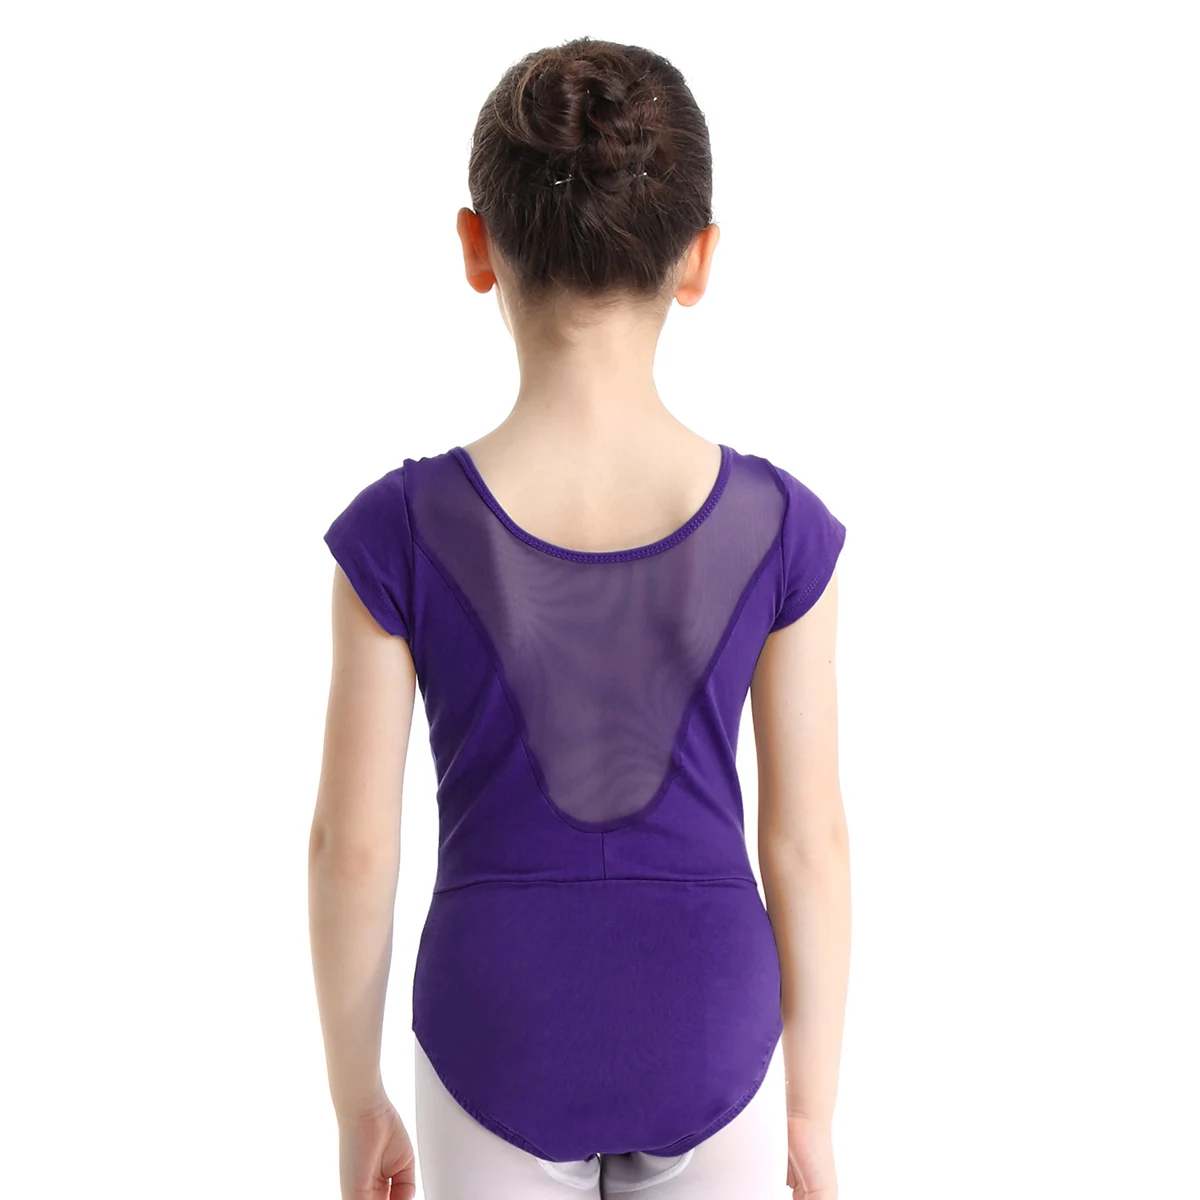 IEFiEL/танцевальный костюм-пачка с v-образным вырезом для девочек, танцевальный костюм для балета, гимнастики, трико для детей, балетная пачка, балерина